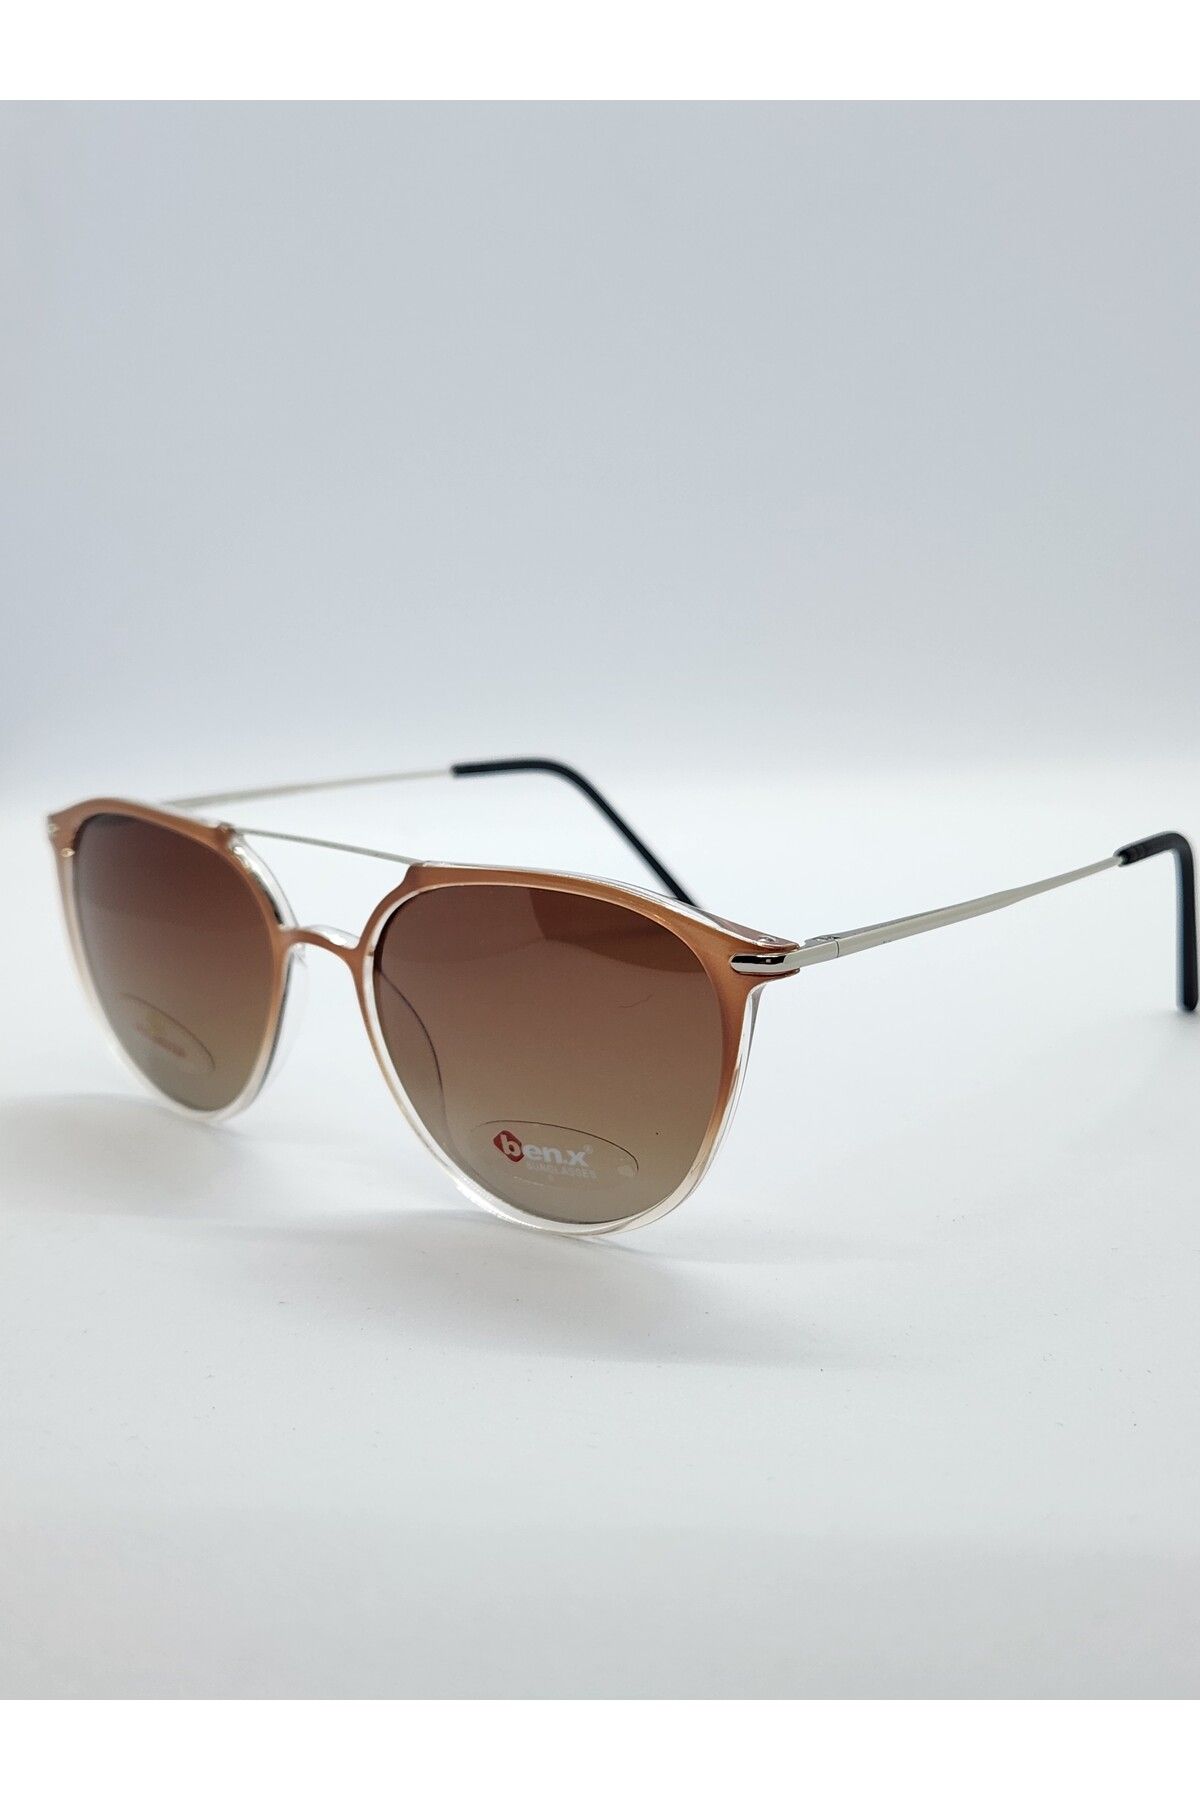 Benx Sunglasses Köprülü Model Kadın Güneş Gözlüğü